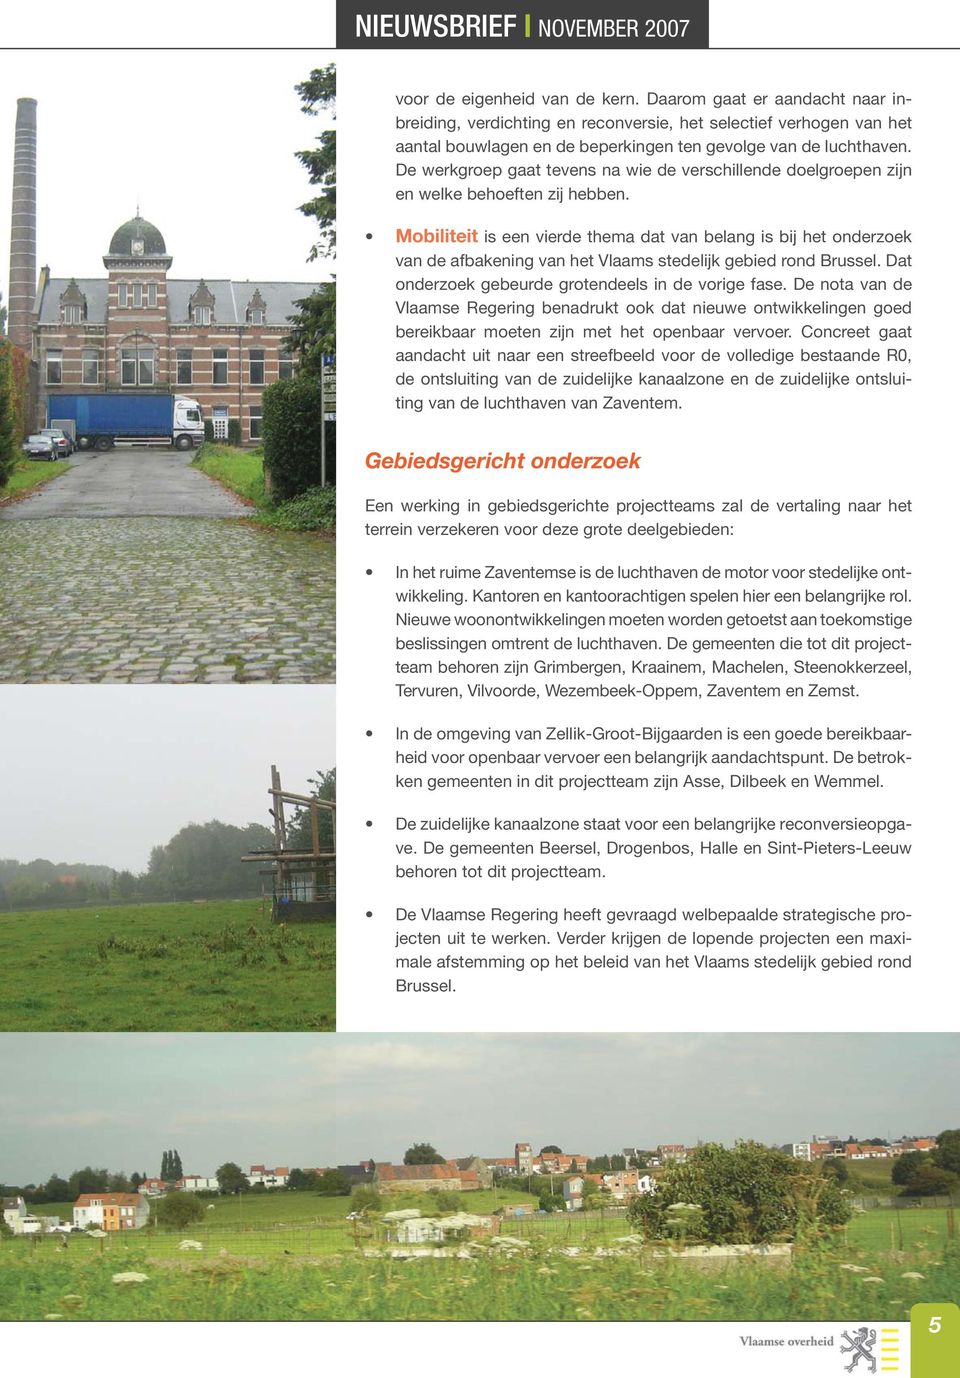 Mobiliteit is een vierde thema dat van belang is bij het onderzoek van de afbakening van het Vlaams stedelijk gebied rond Brussel. Dat onderzoek gebeurde grotendeels in de vorige fase.